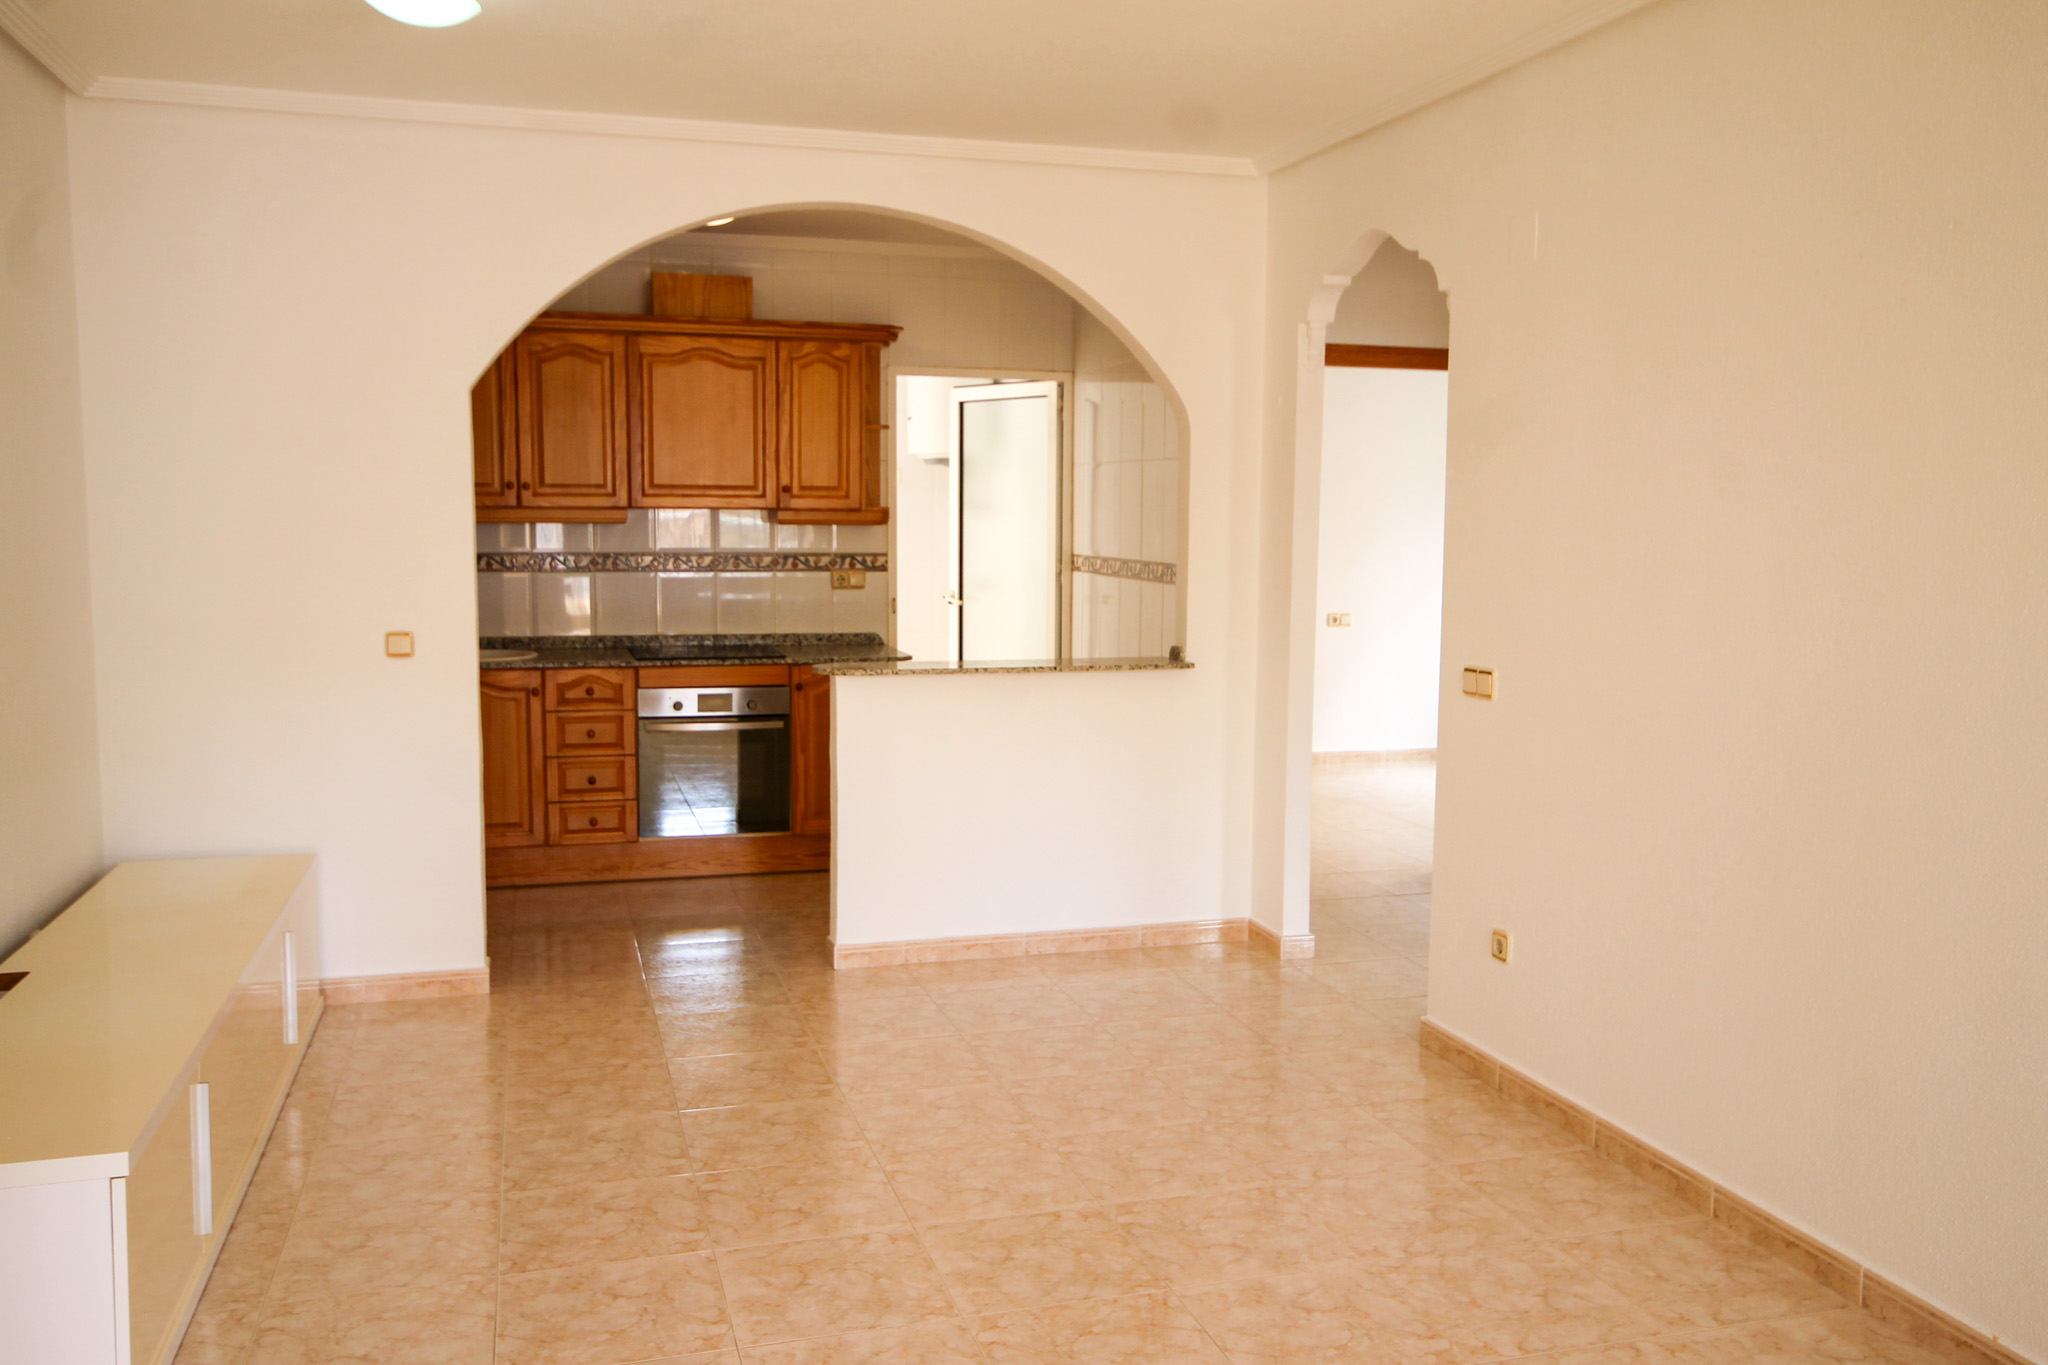 For Sale. Apartment in San Miguel de Salinas